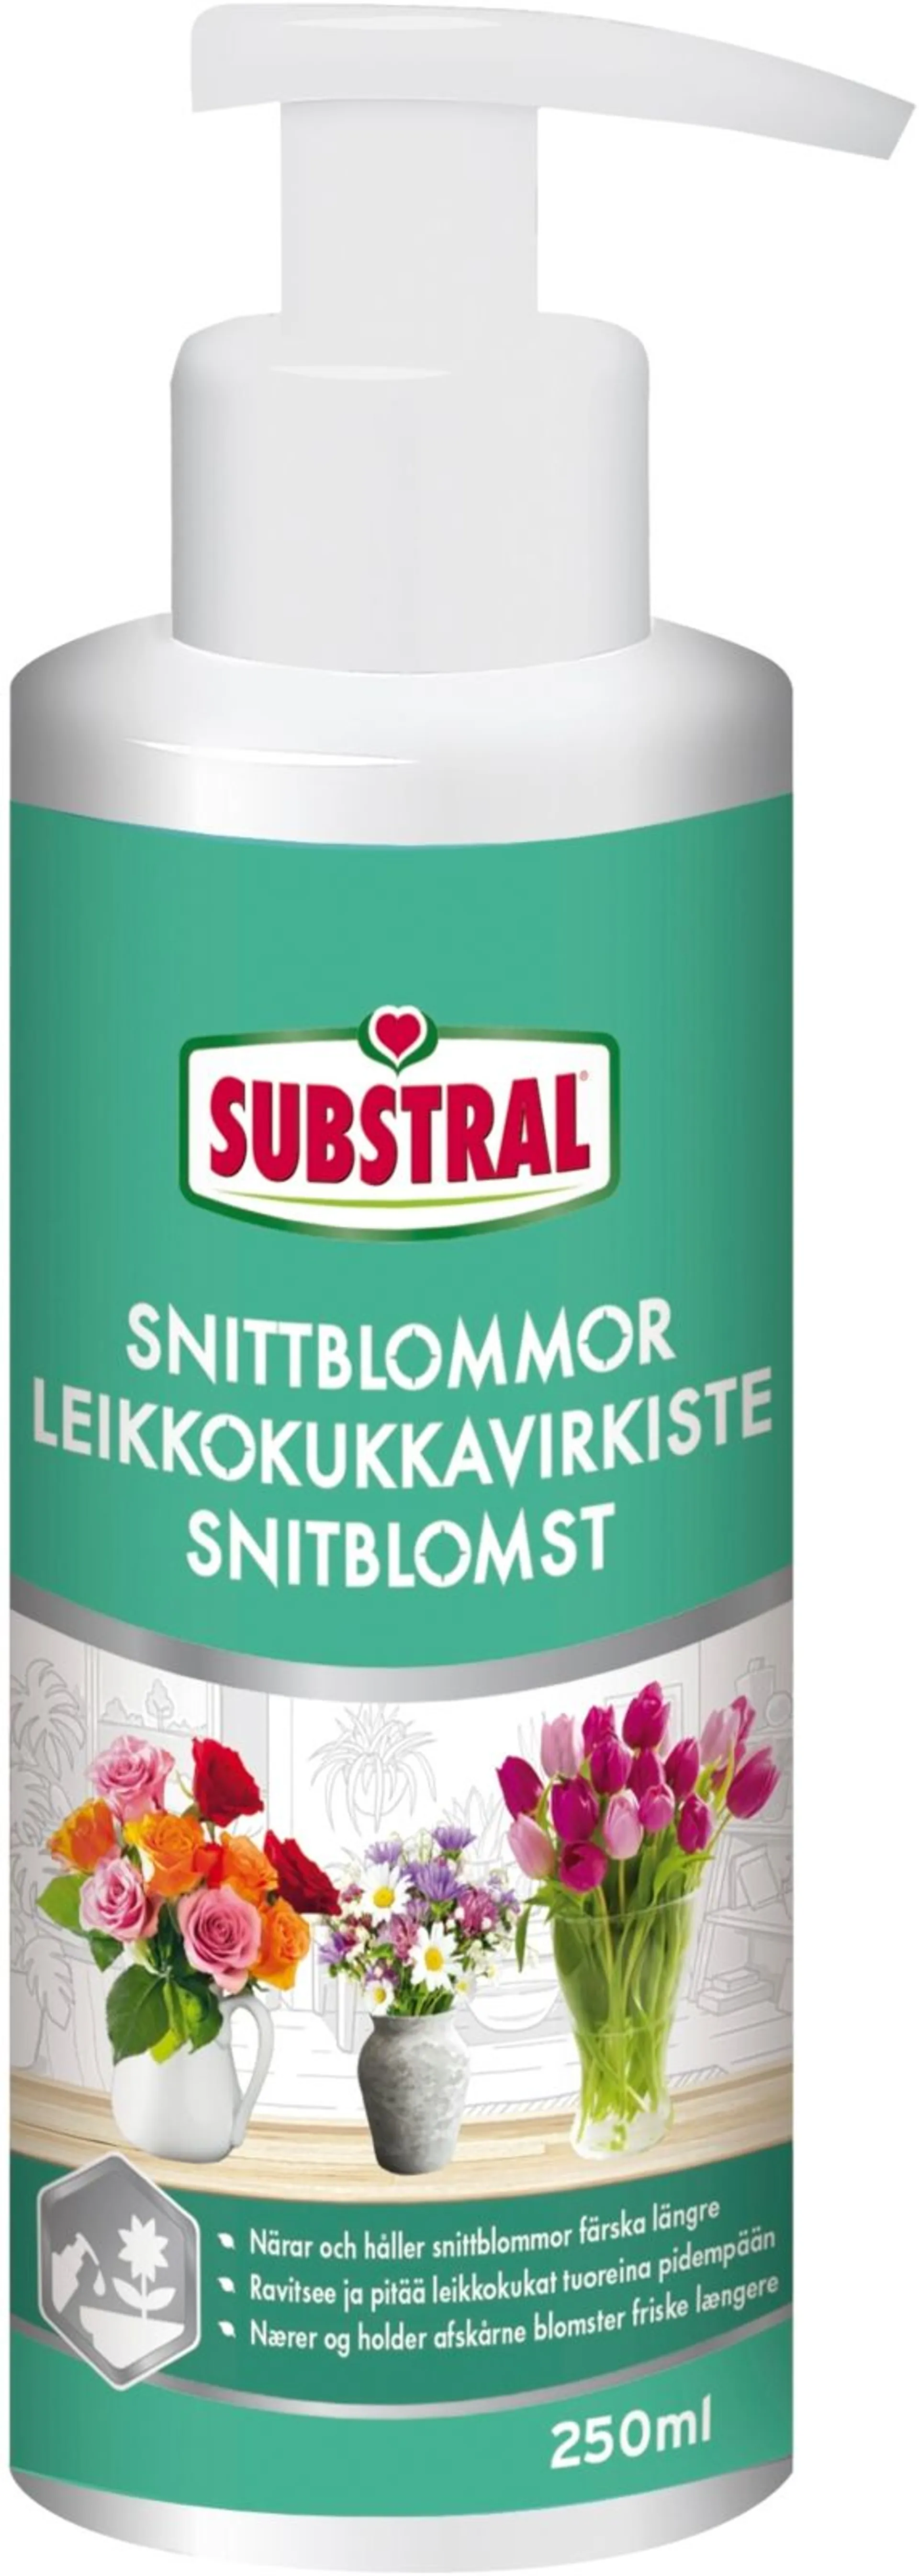 Substral Leikkokukkavirkiste 250 ml